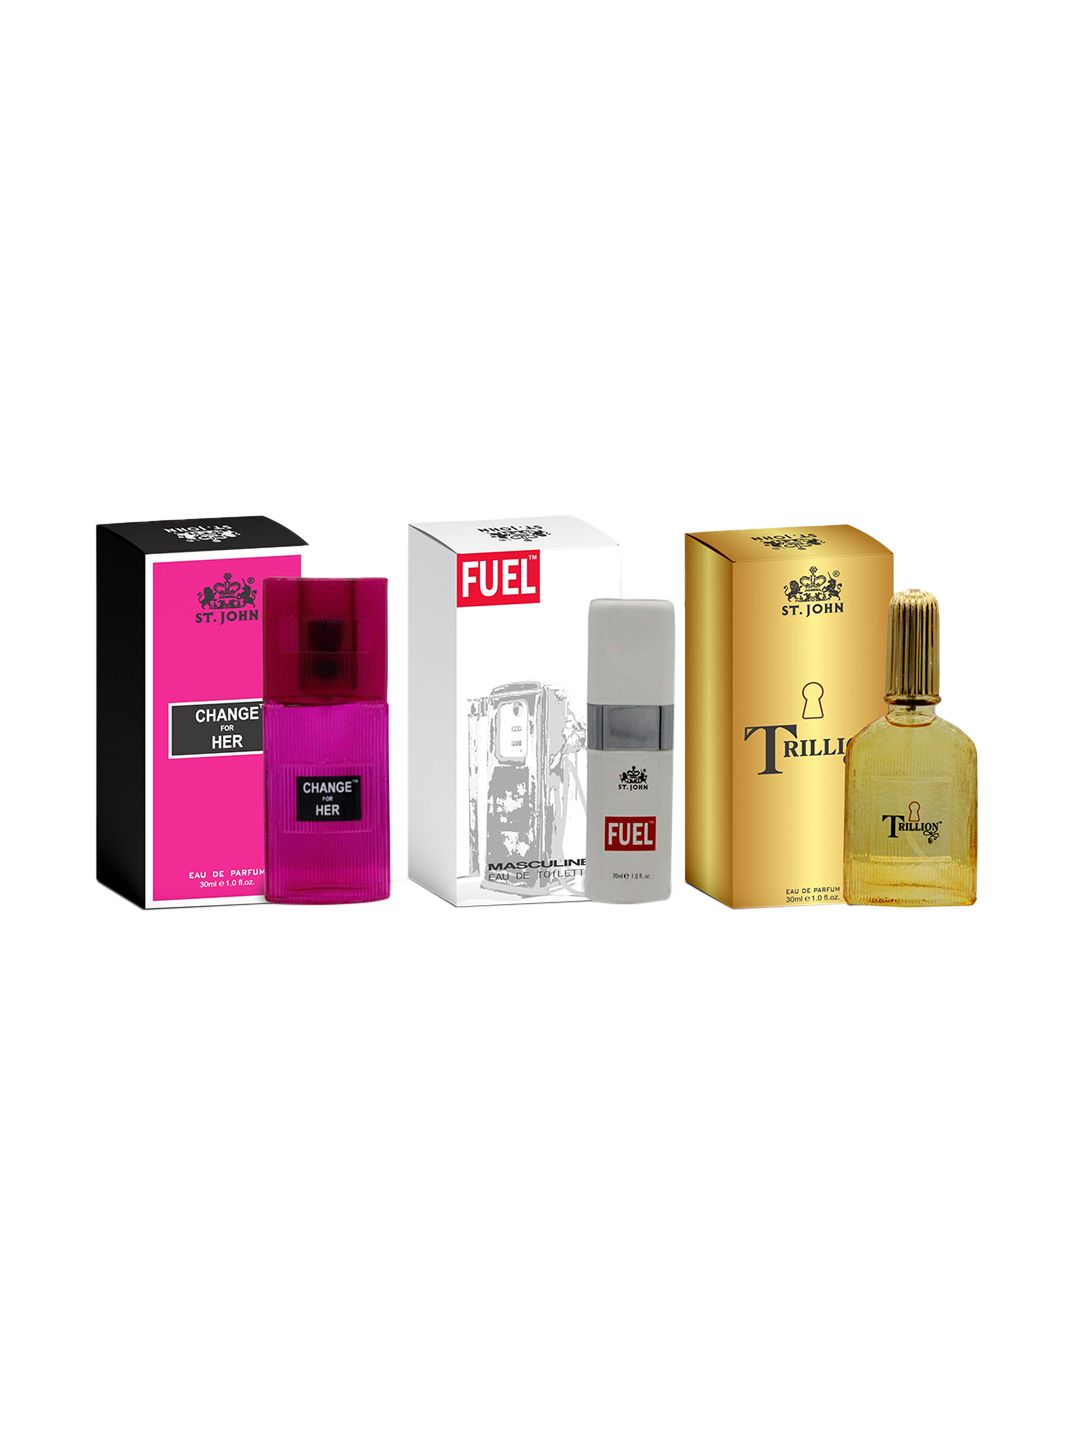 St. John Set of 3 Change For Her - Men Fuel - Men Trillion Eau De Parfum - 30 ml each Price in India